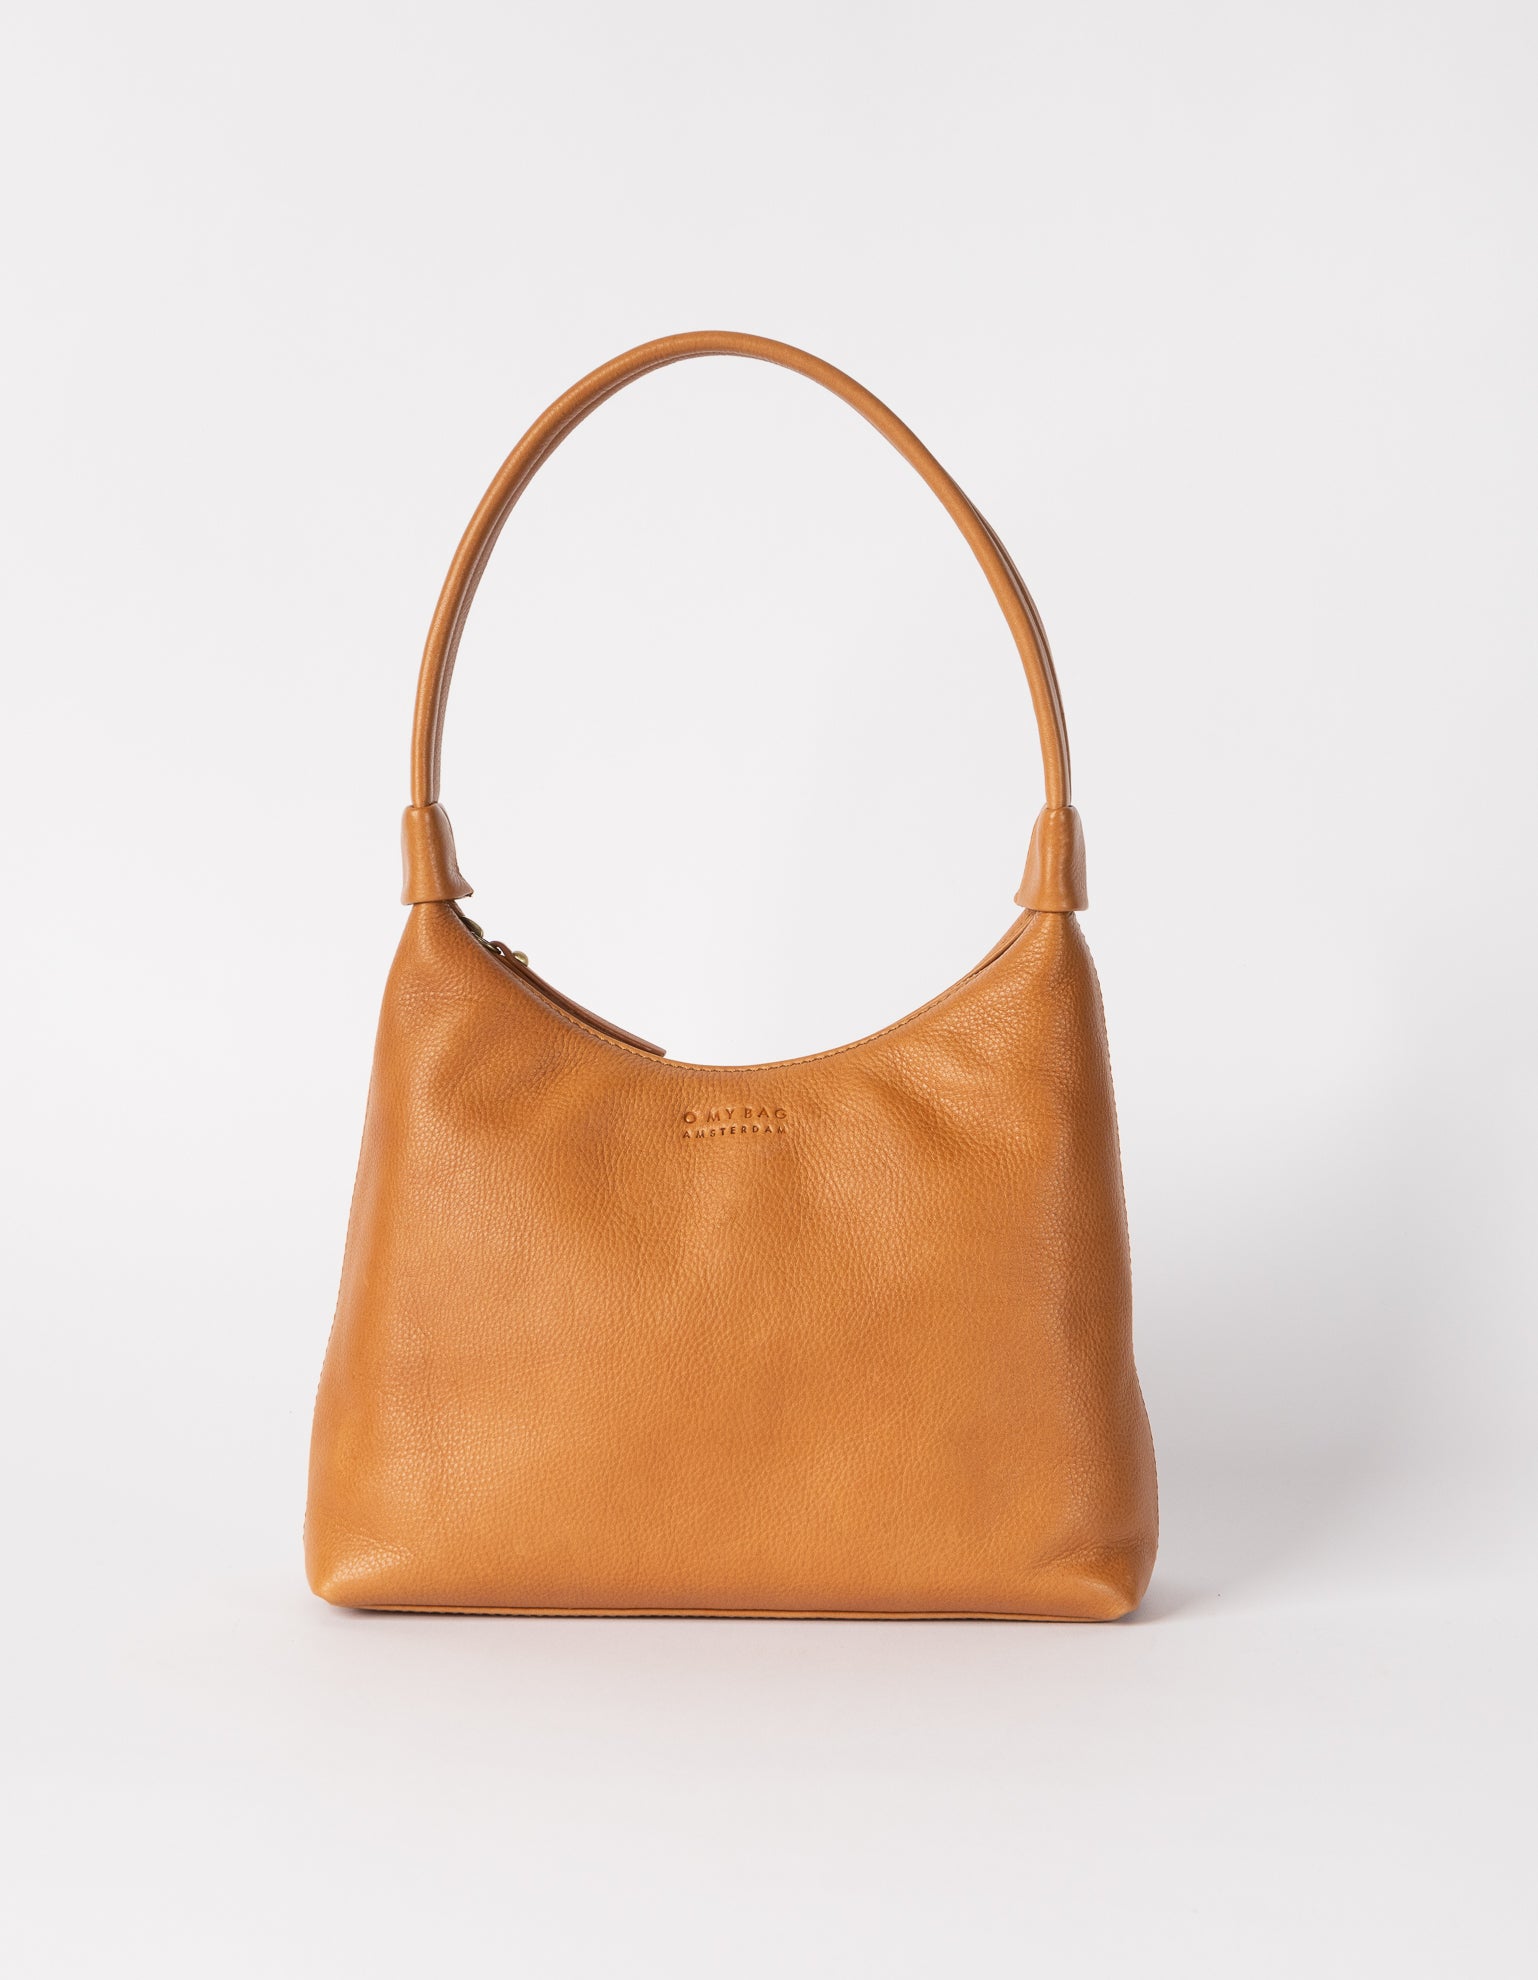 Nora shoulder bag, front product image